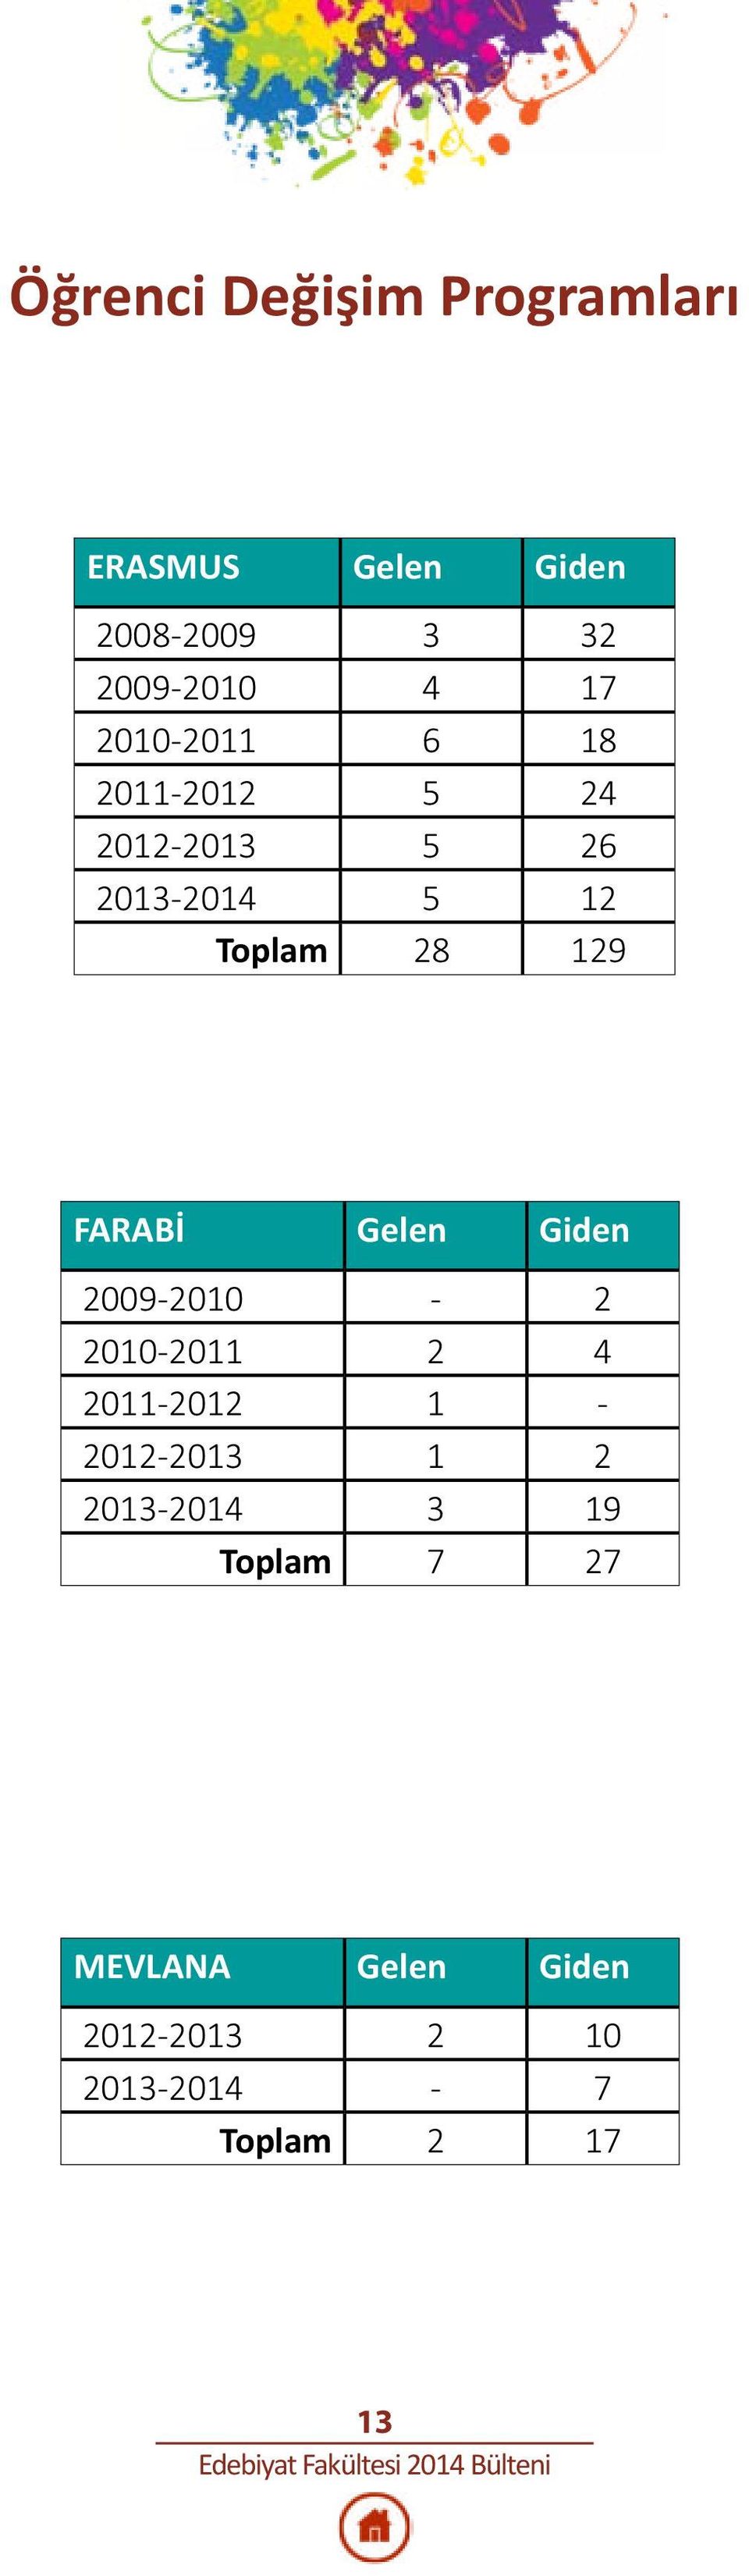 FARABİ Gelen Giden 2009-2010 - 2 2010-2011 2 4 2011-2012 1-2012-2013 1 2